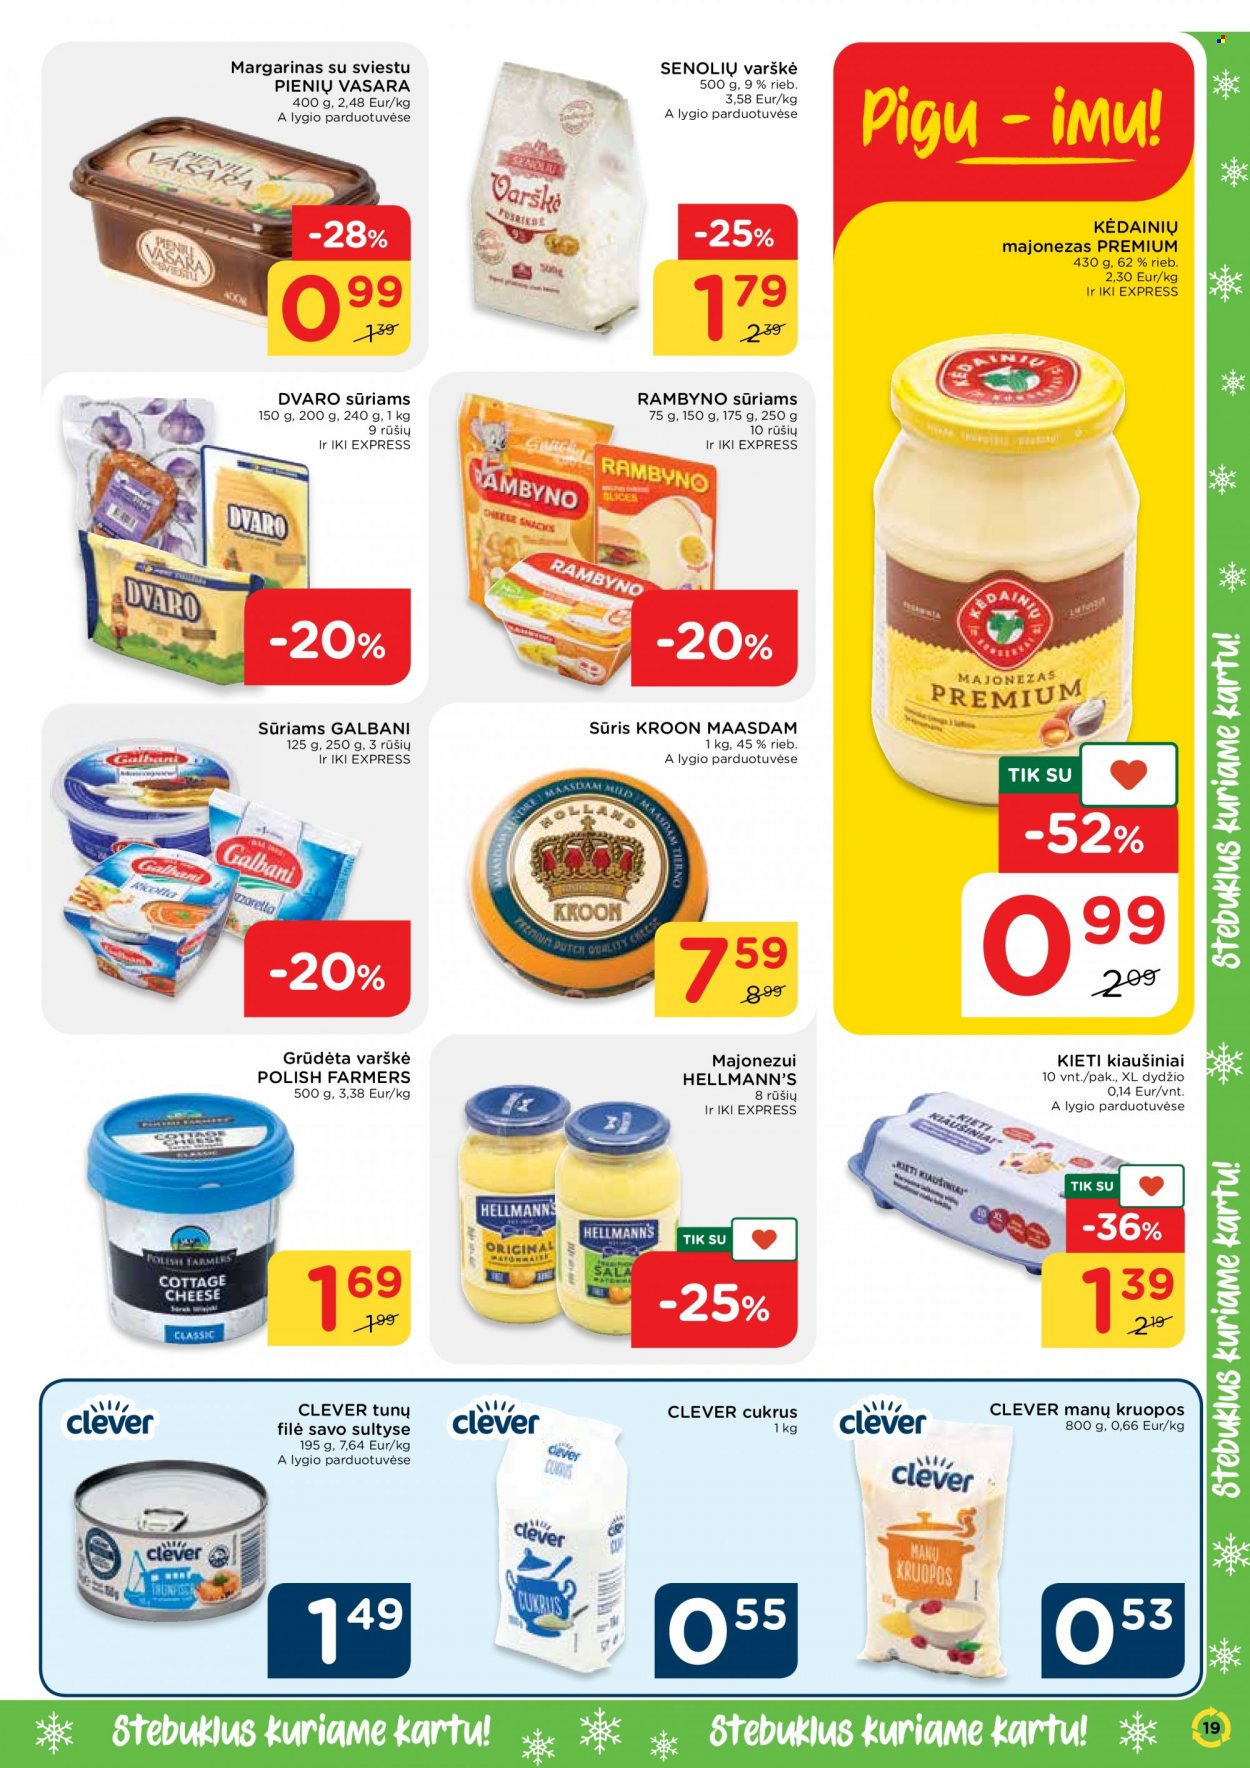 thumbnail - „iki“ leidinys - 2021 11 15 - 2021 11 21 - Išpardavimų produktai - maasdam, sūris, kiaušiniai, margarinas, Hellmann's, majonezas, cukrus. 19 puslapis.